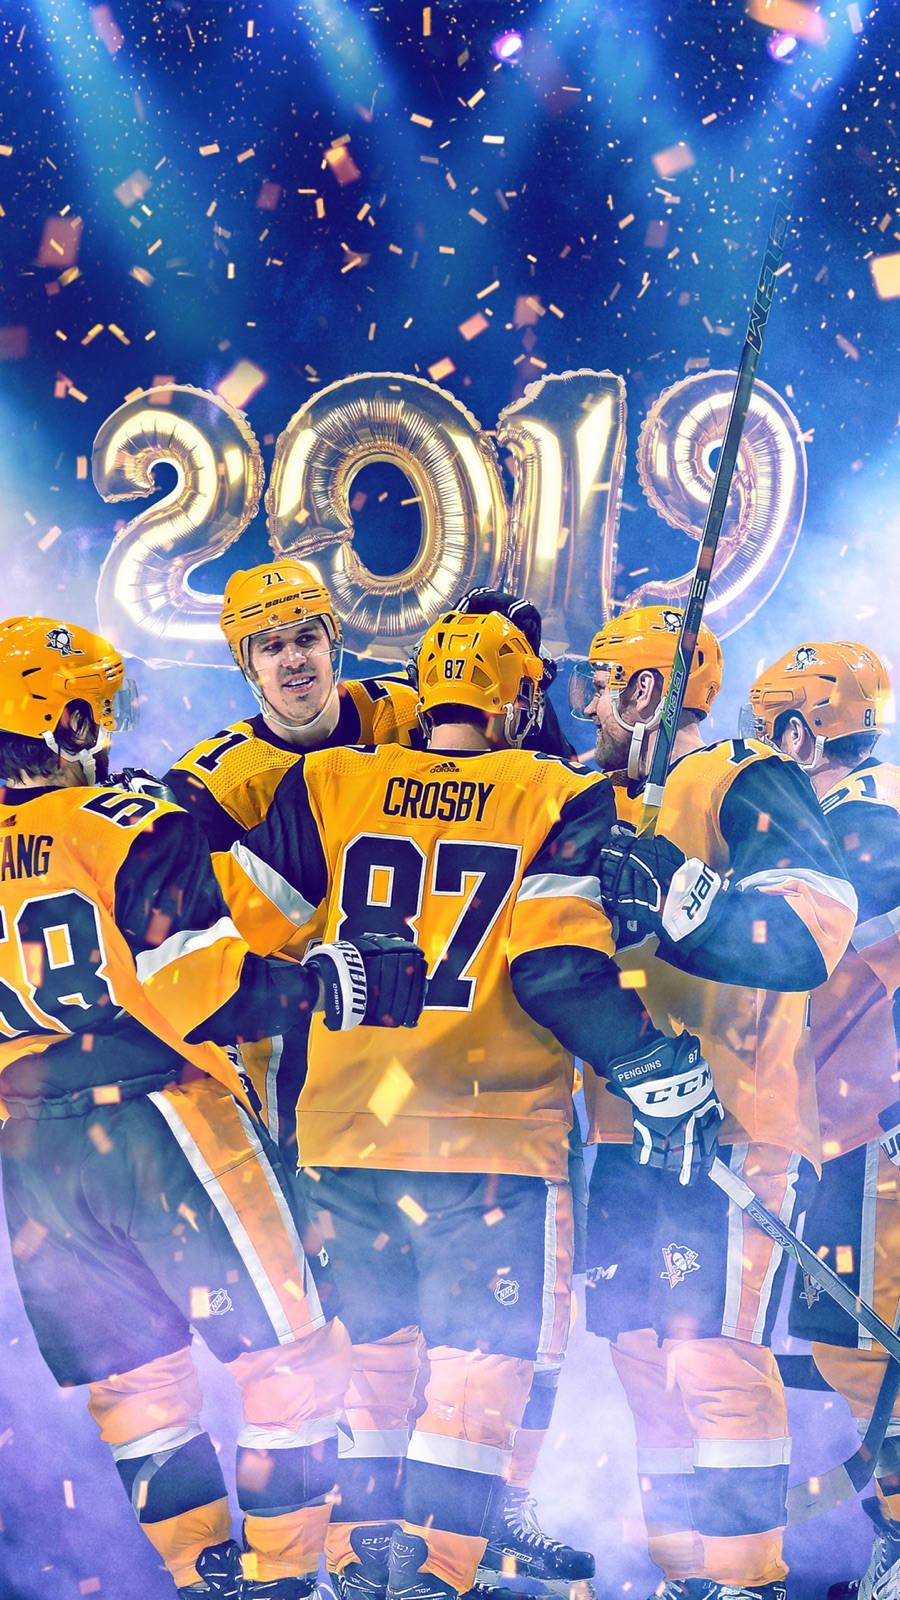 Pittsburgh Penguins 2019 fejring-baggrund: Fejr Pittsburgh Penguins' 2019 sejr med denne festlige baggrund. Wallpaper